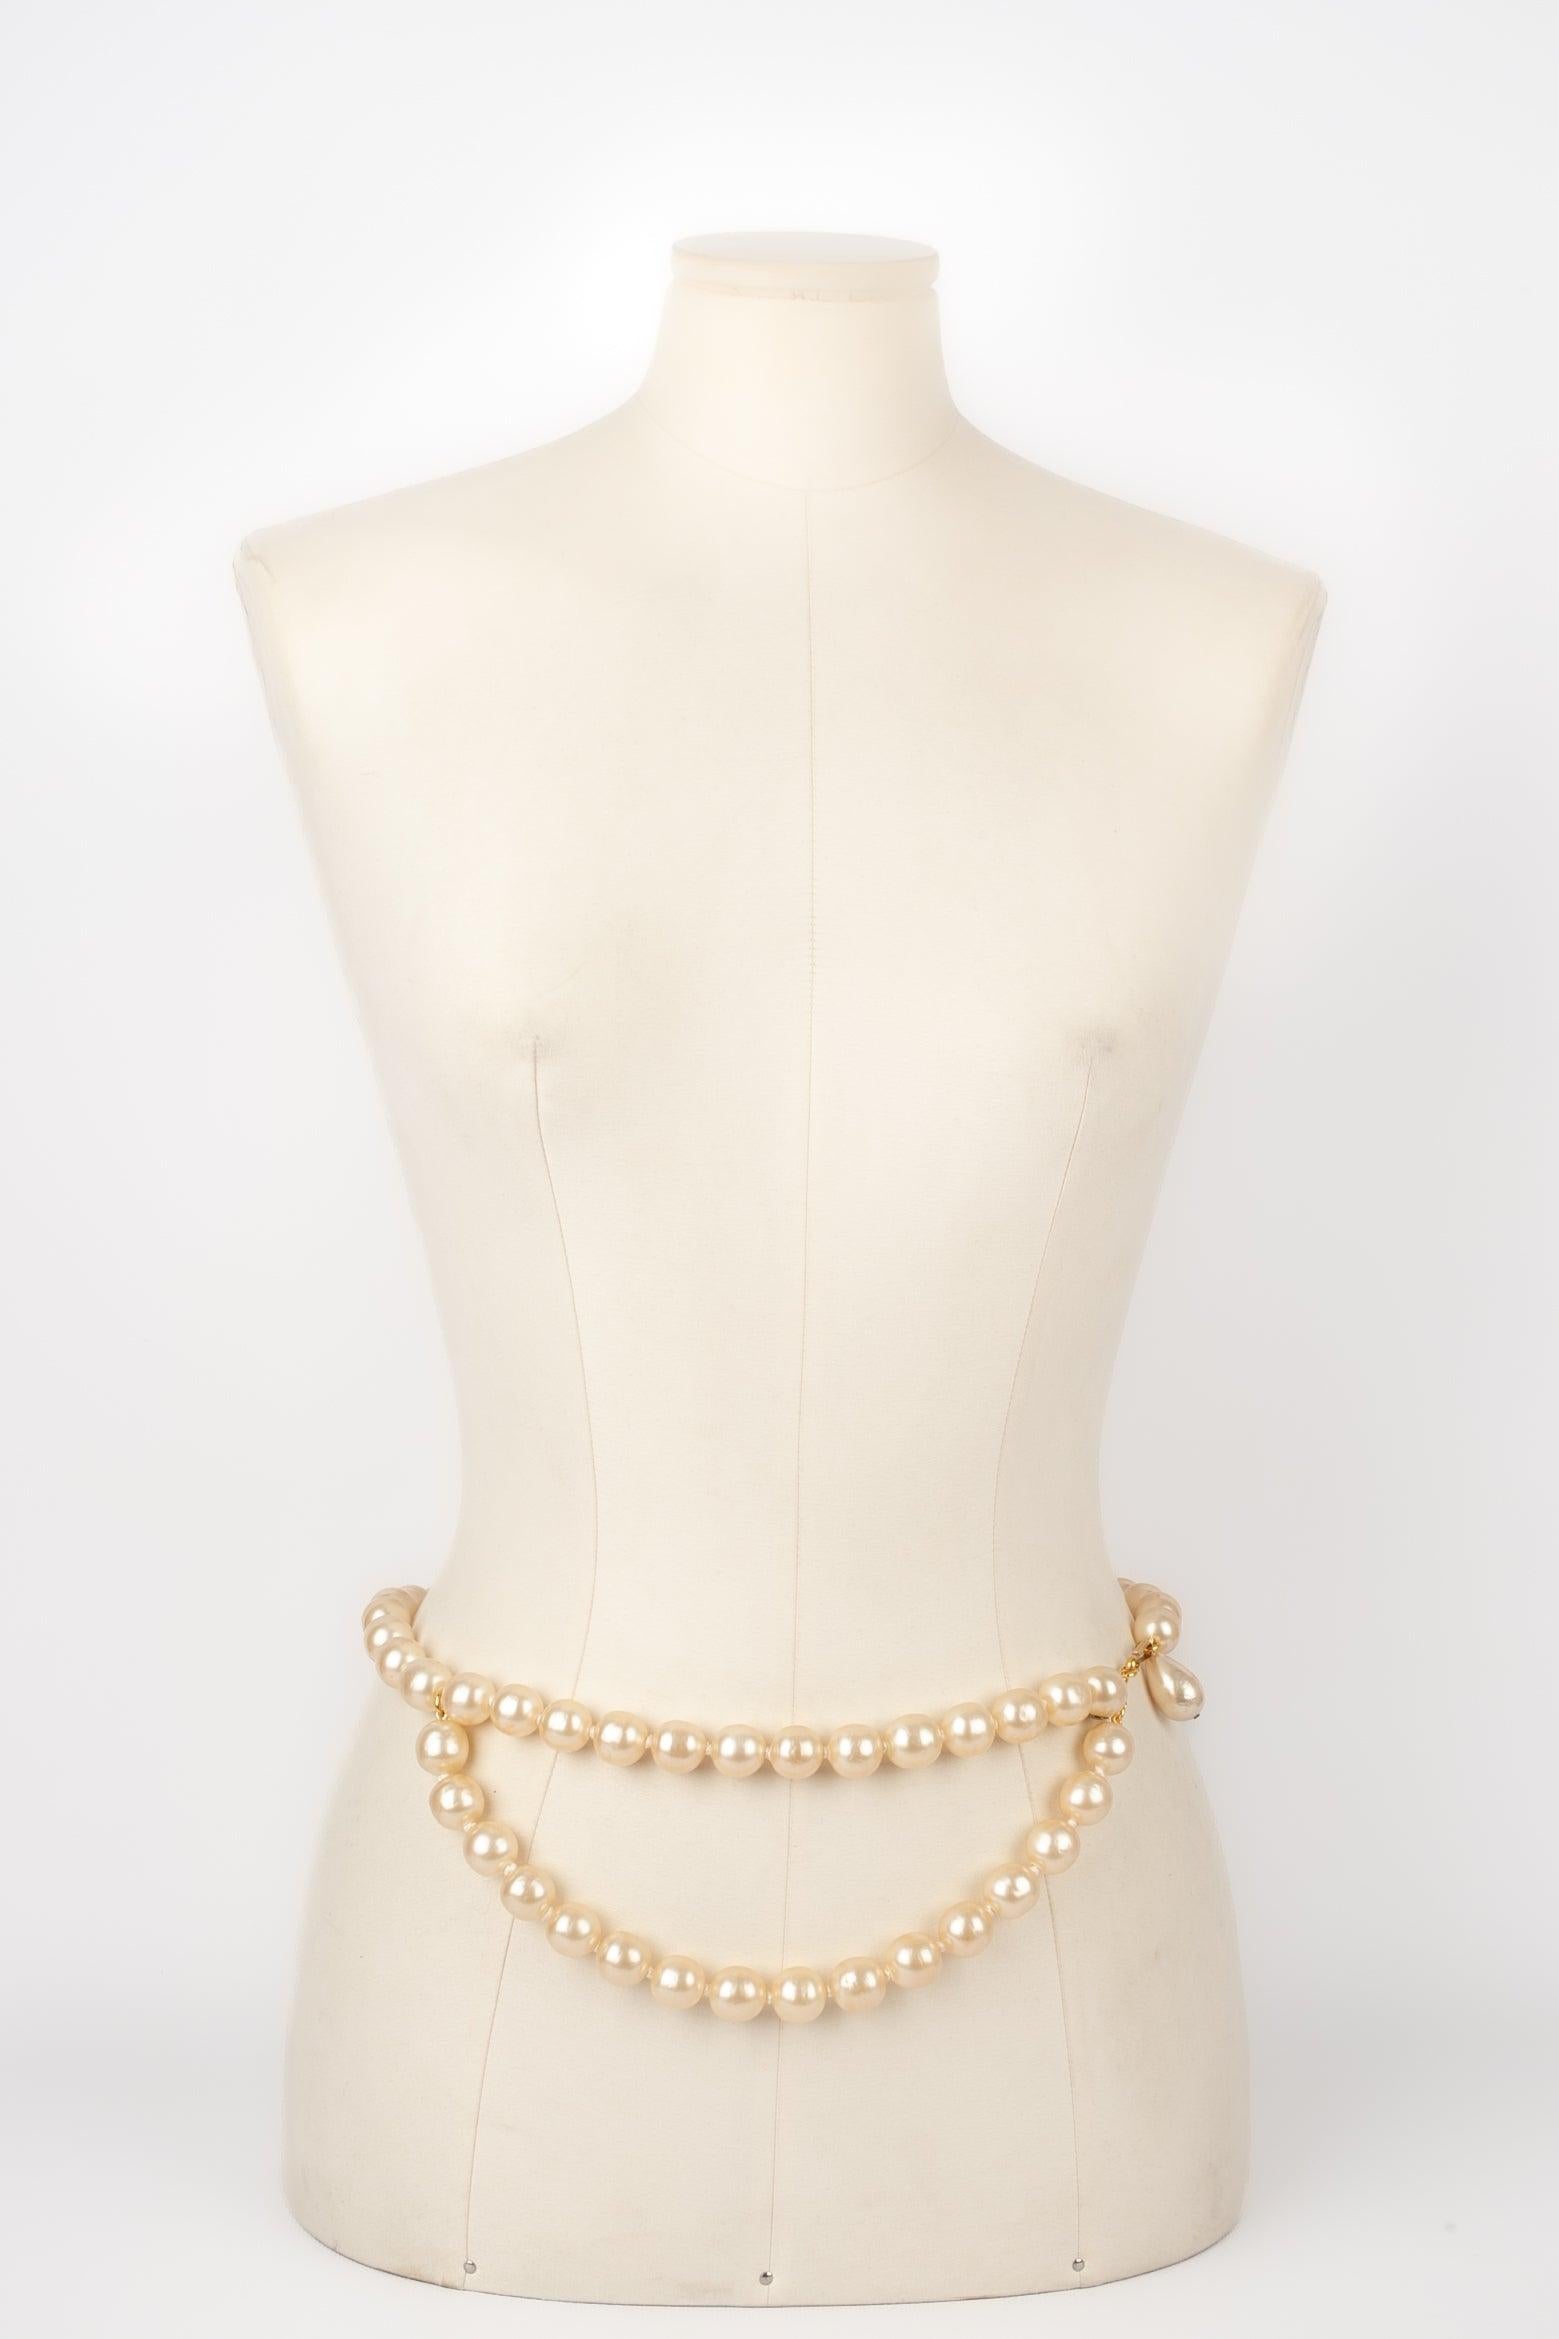 Chanel - (Made in France) Ceinture en perles assemblées avec des nœuds. Collectional automne-hiver 1994. Pour être mentionnée, une perle est écaillée.
 
 Informations complémentaires : 
 Condit : Bon état
 Dimensions : Longueur : 82 cm
 Période :